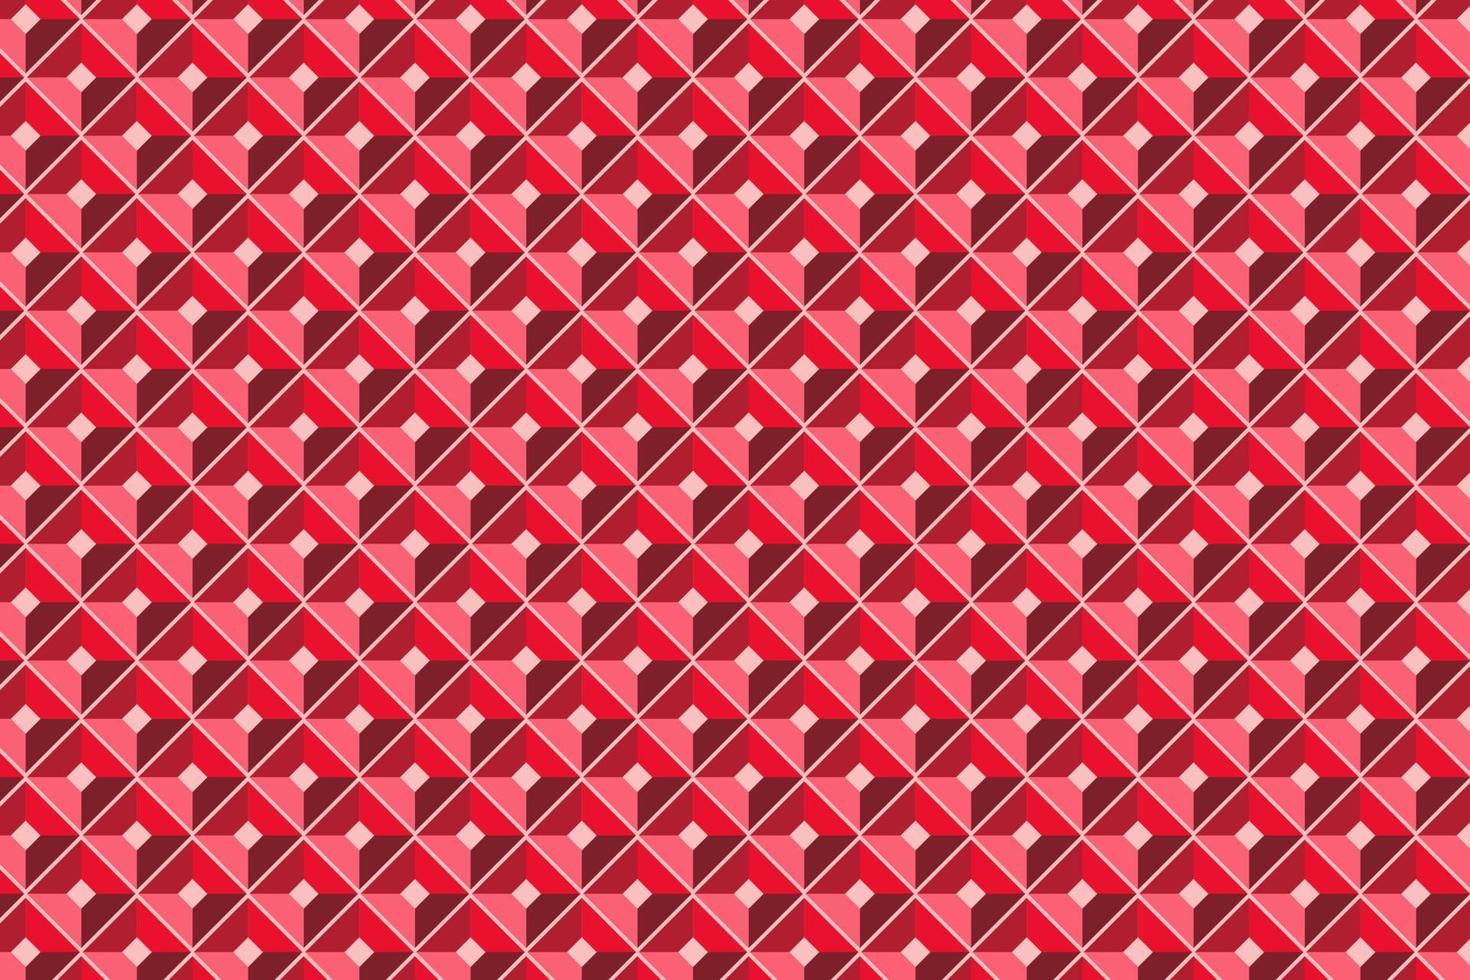 patroon met meetkundig elementen in rood tonen abstract helling achtergrond vector